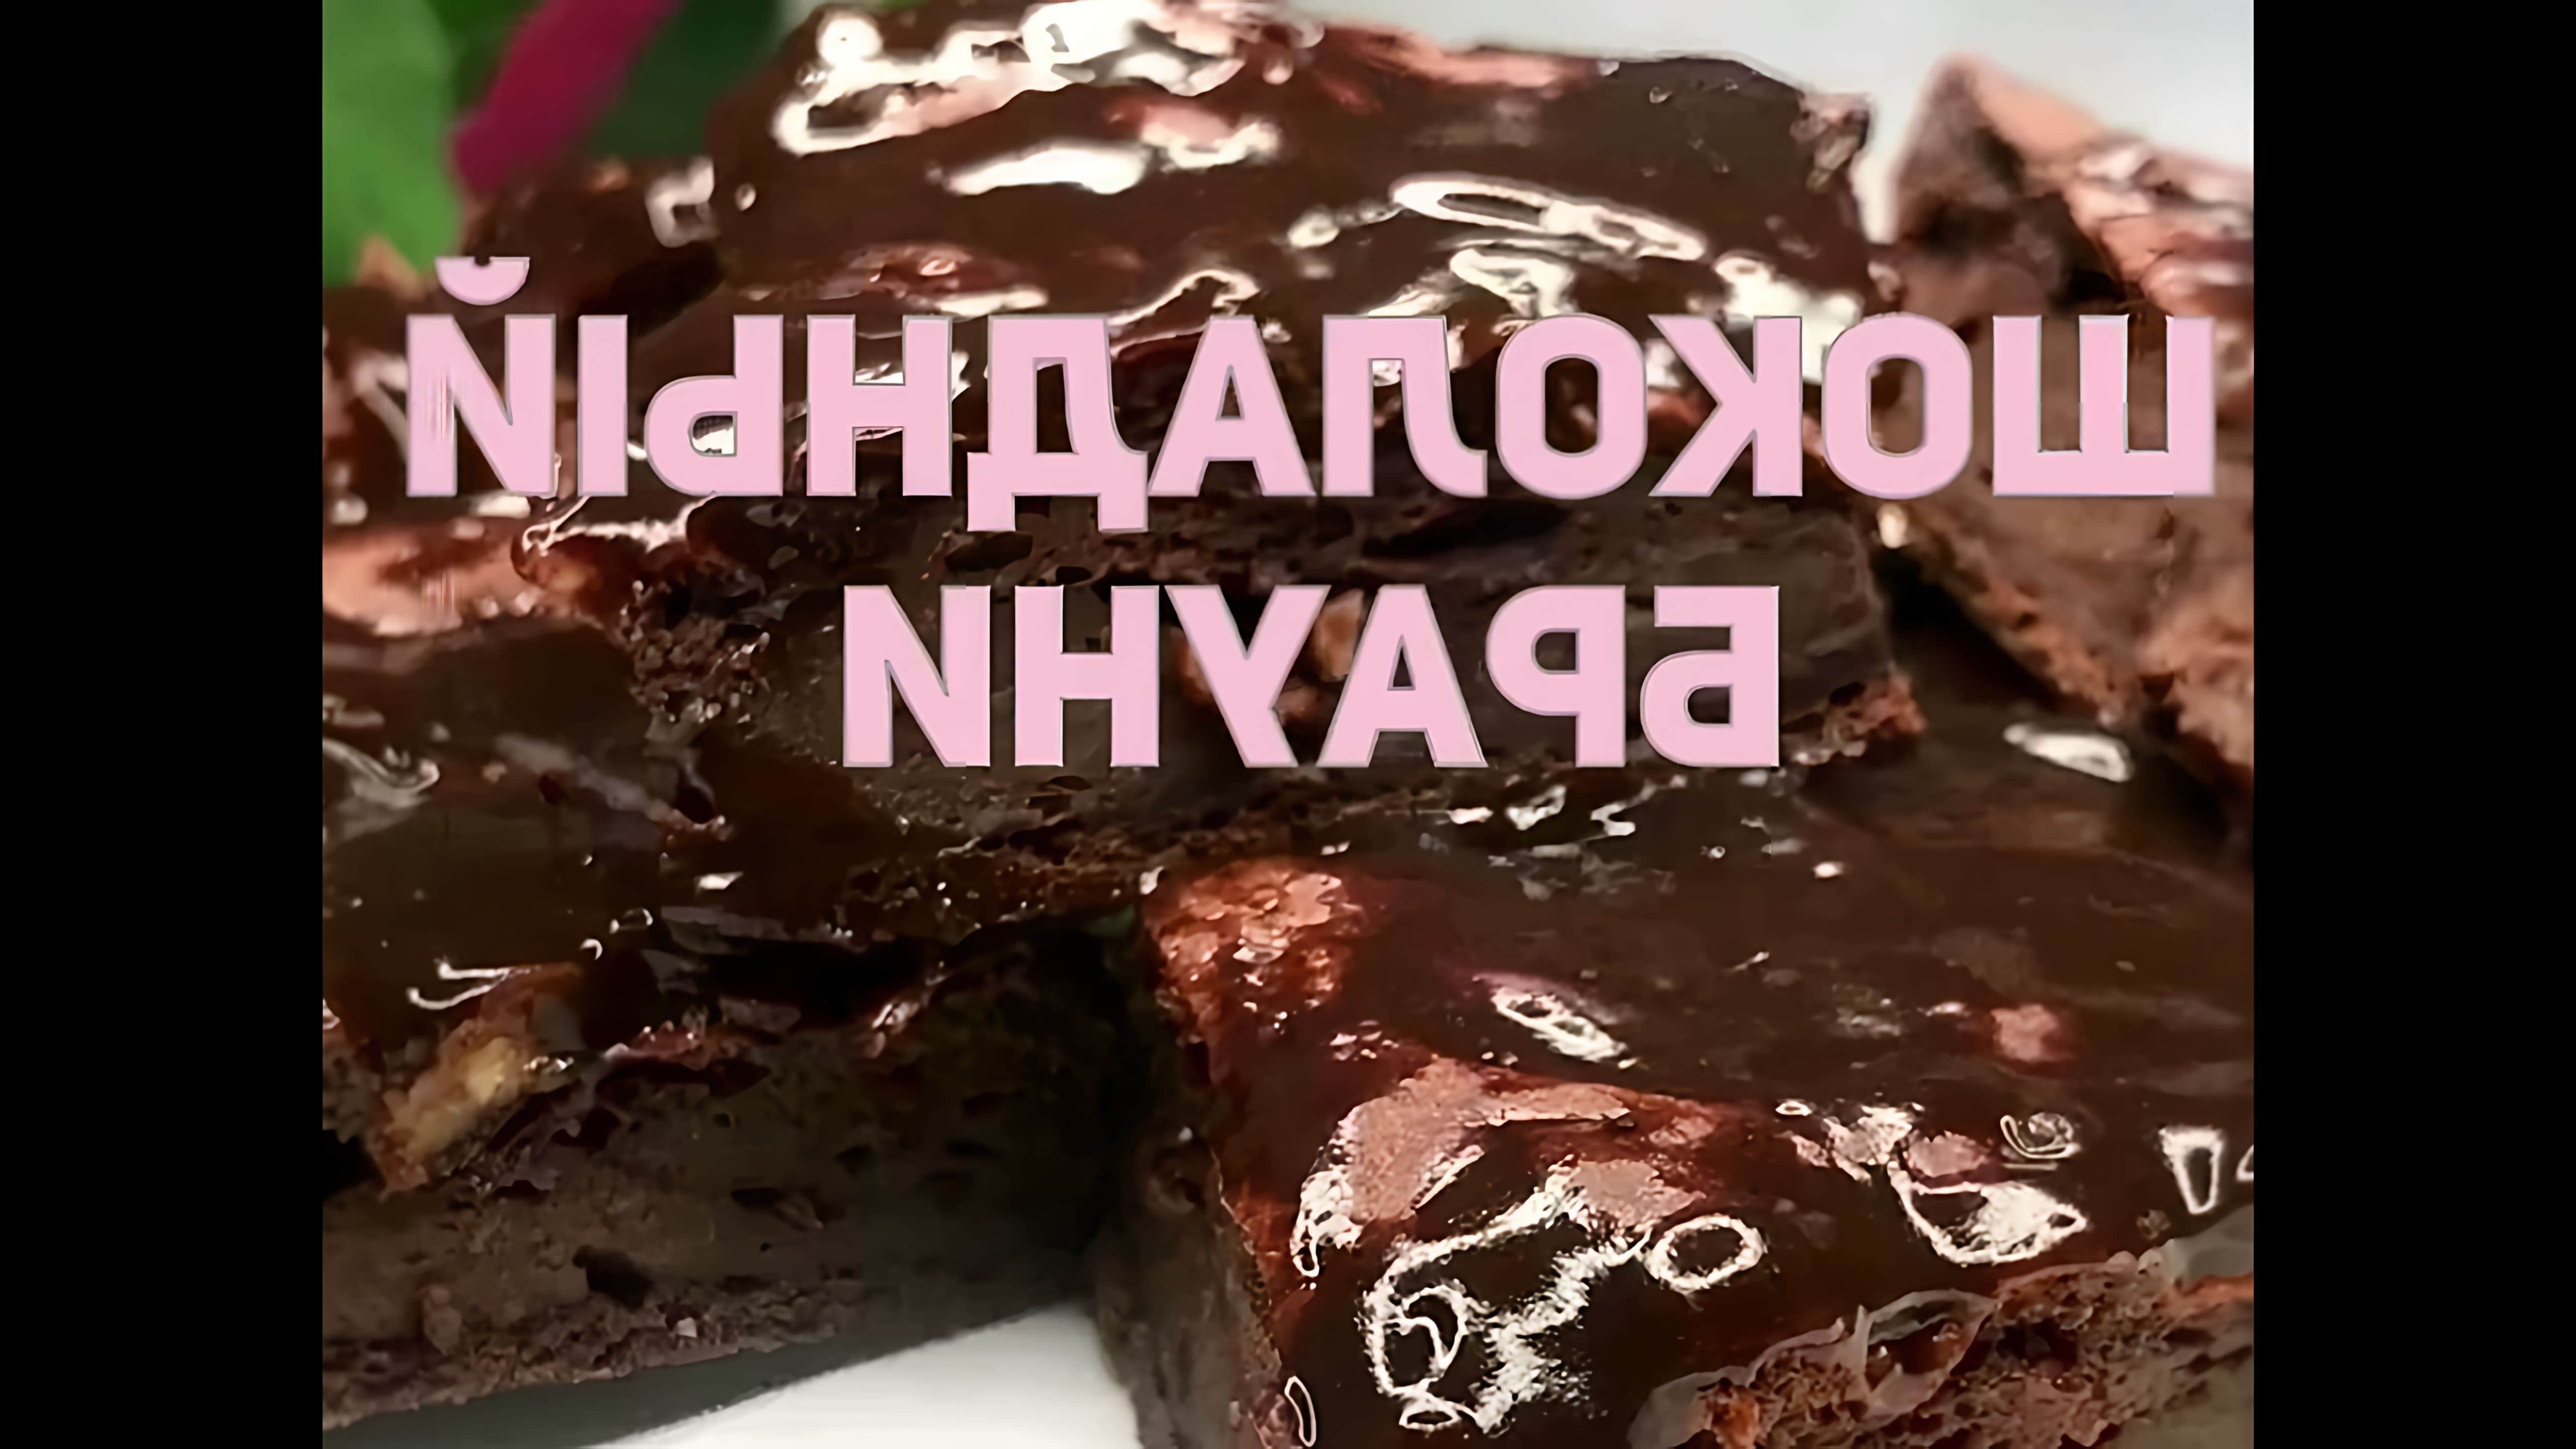 Шоколадные Брауни Диета Дюкан - это видео-ролик, который рассказывает о диете, основанной на употреблении шоколадных брауни